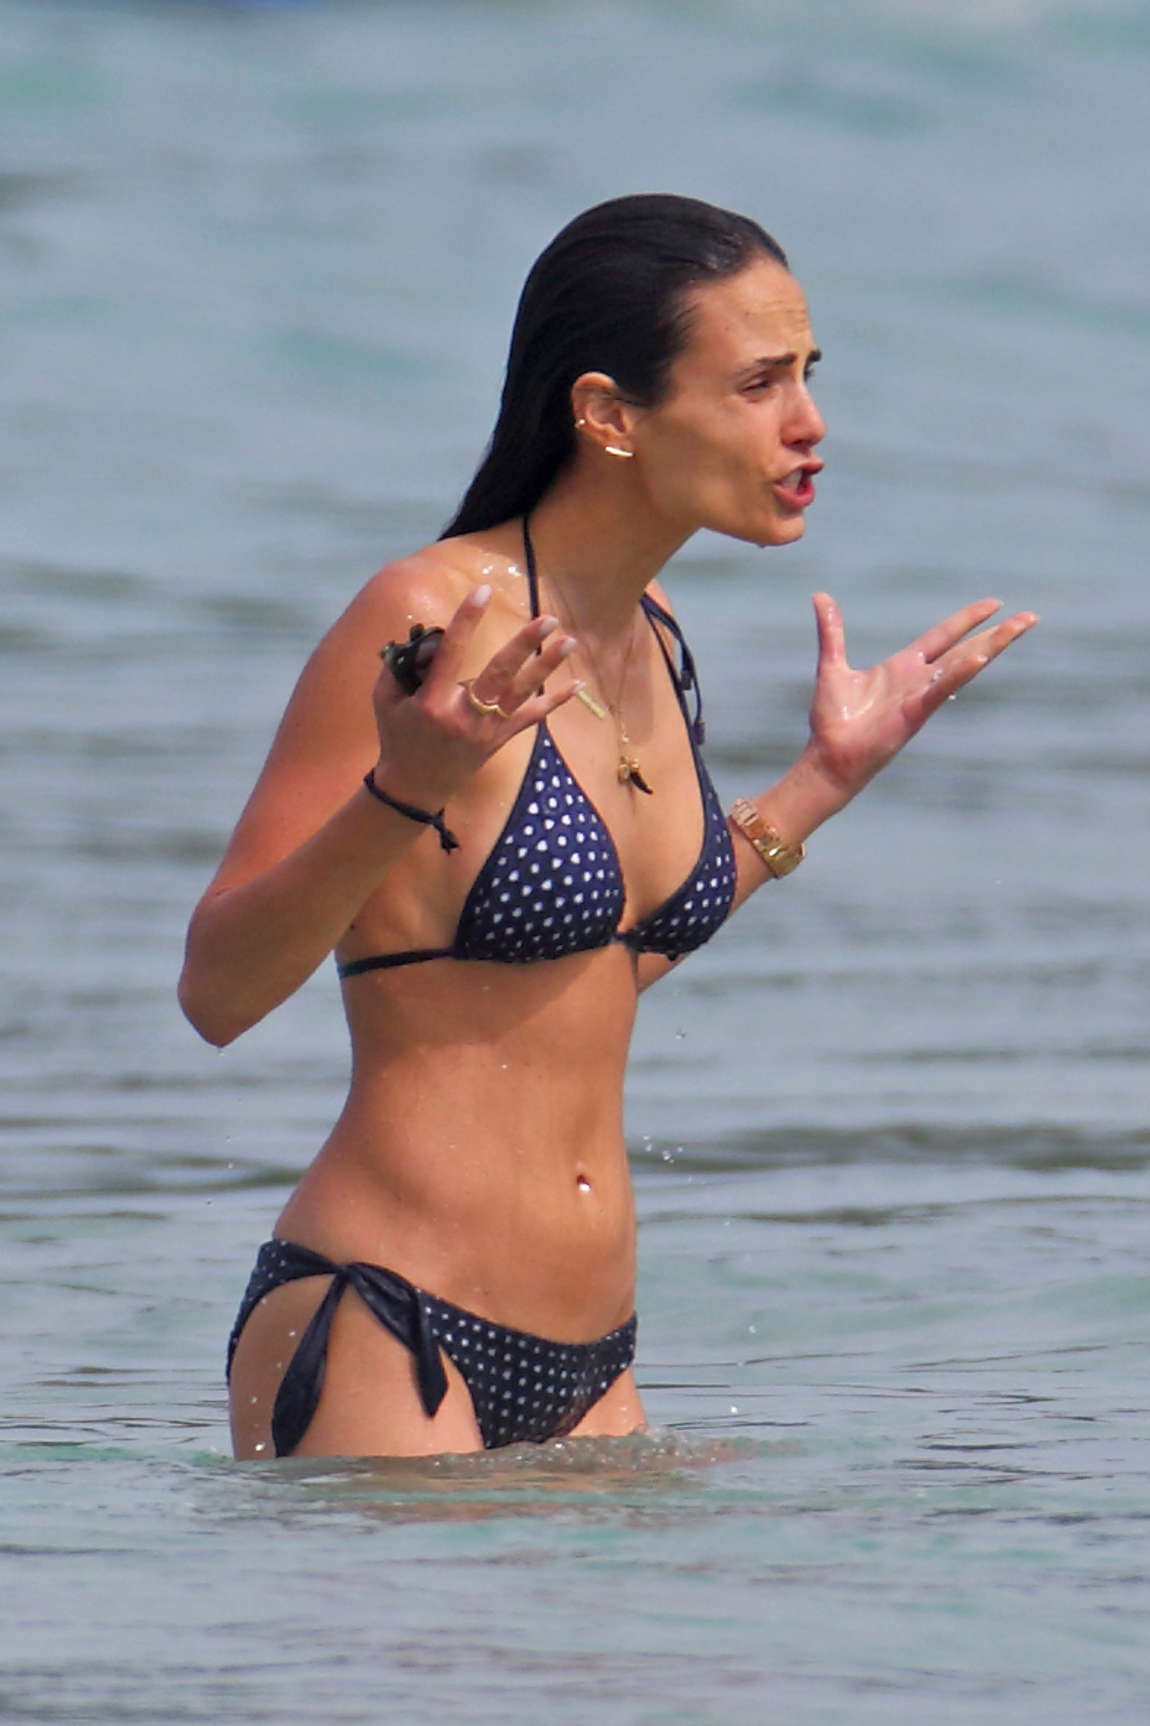 Jordana Brewster in a polka dot bikini in Hawaii.